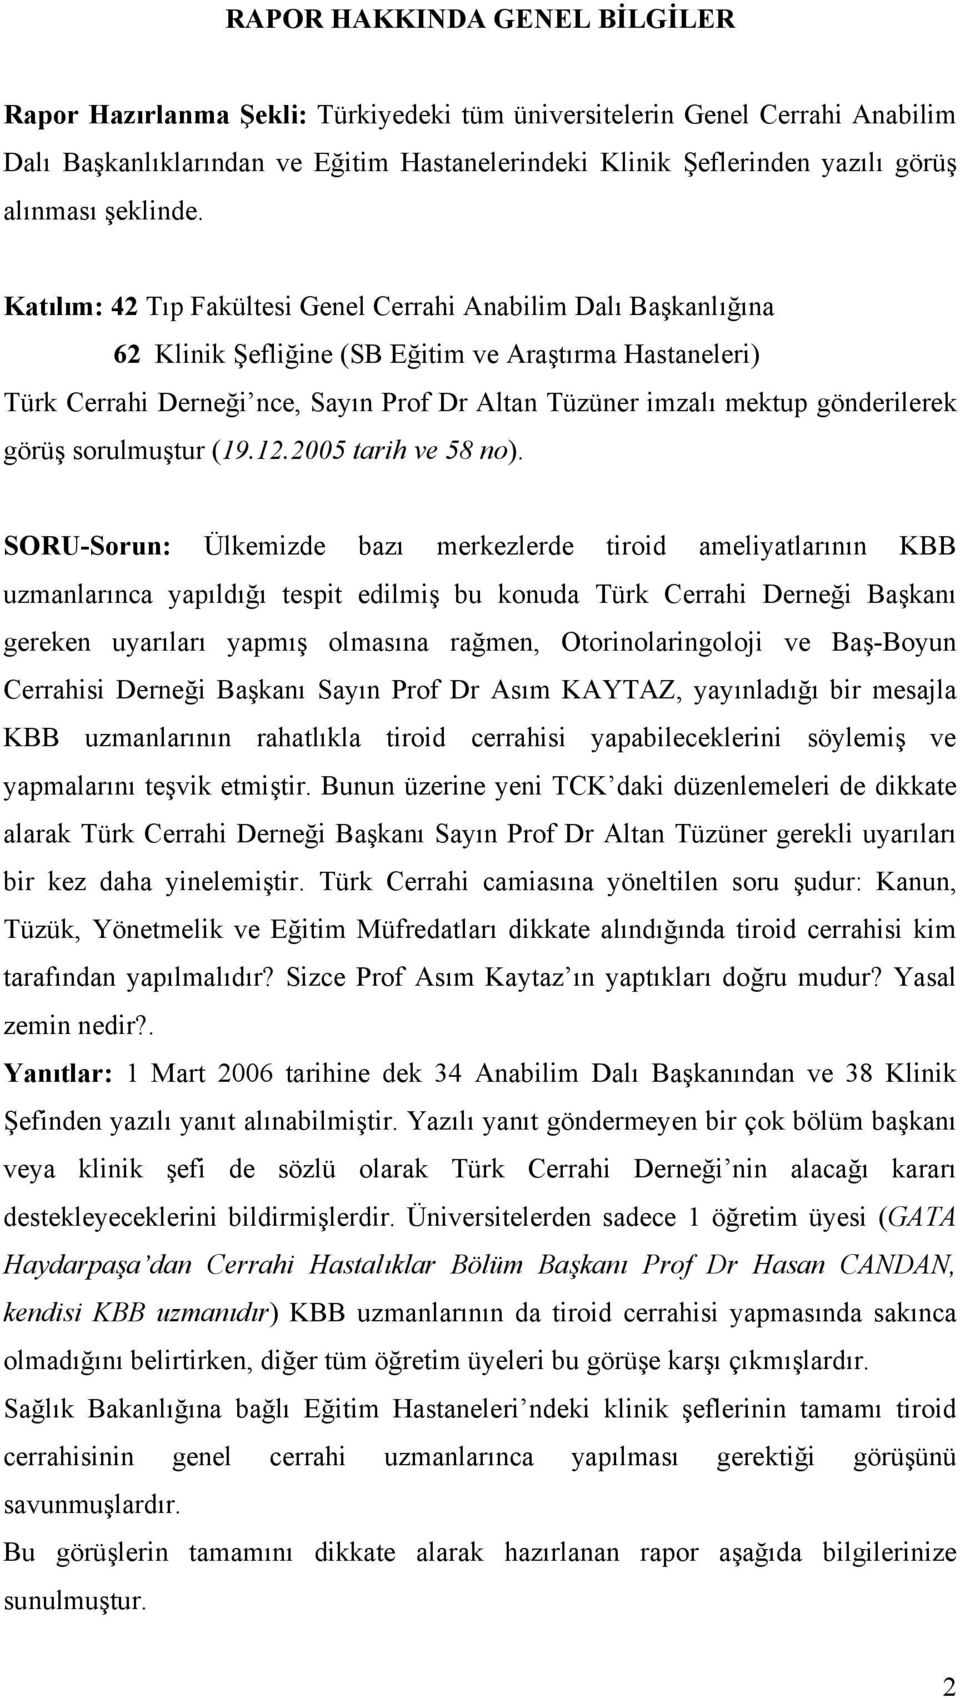 Katılım: 42 Tıp Fakültesi Genel Cerrahi Anabilim Dalı Başkanlığına 62 Klinik Şefliğine (SB Eğitim ve Araştırma Hastaneleri) Türk Cerrahi Derneği nce, Sayın Prof Dr Altan Tüzüner imzalı mektup